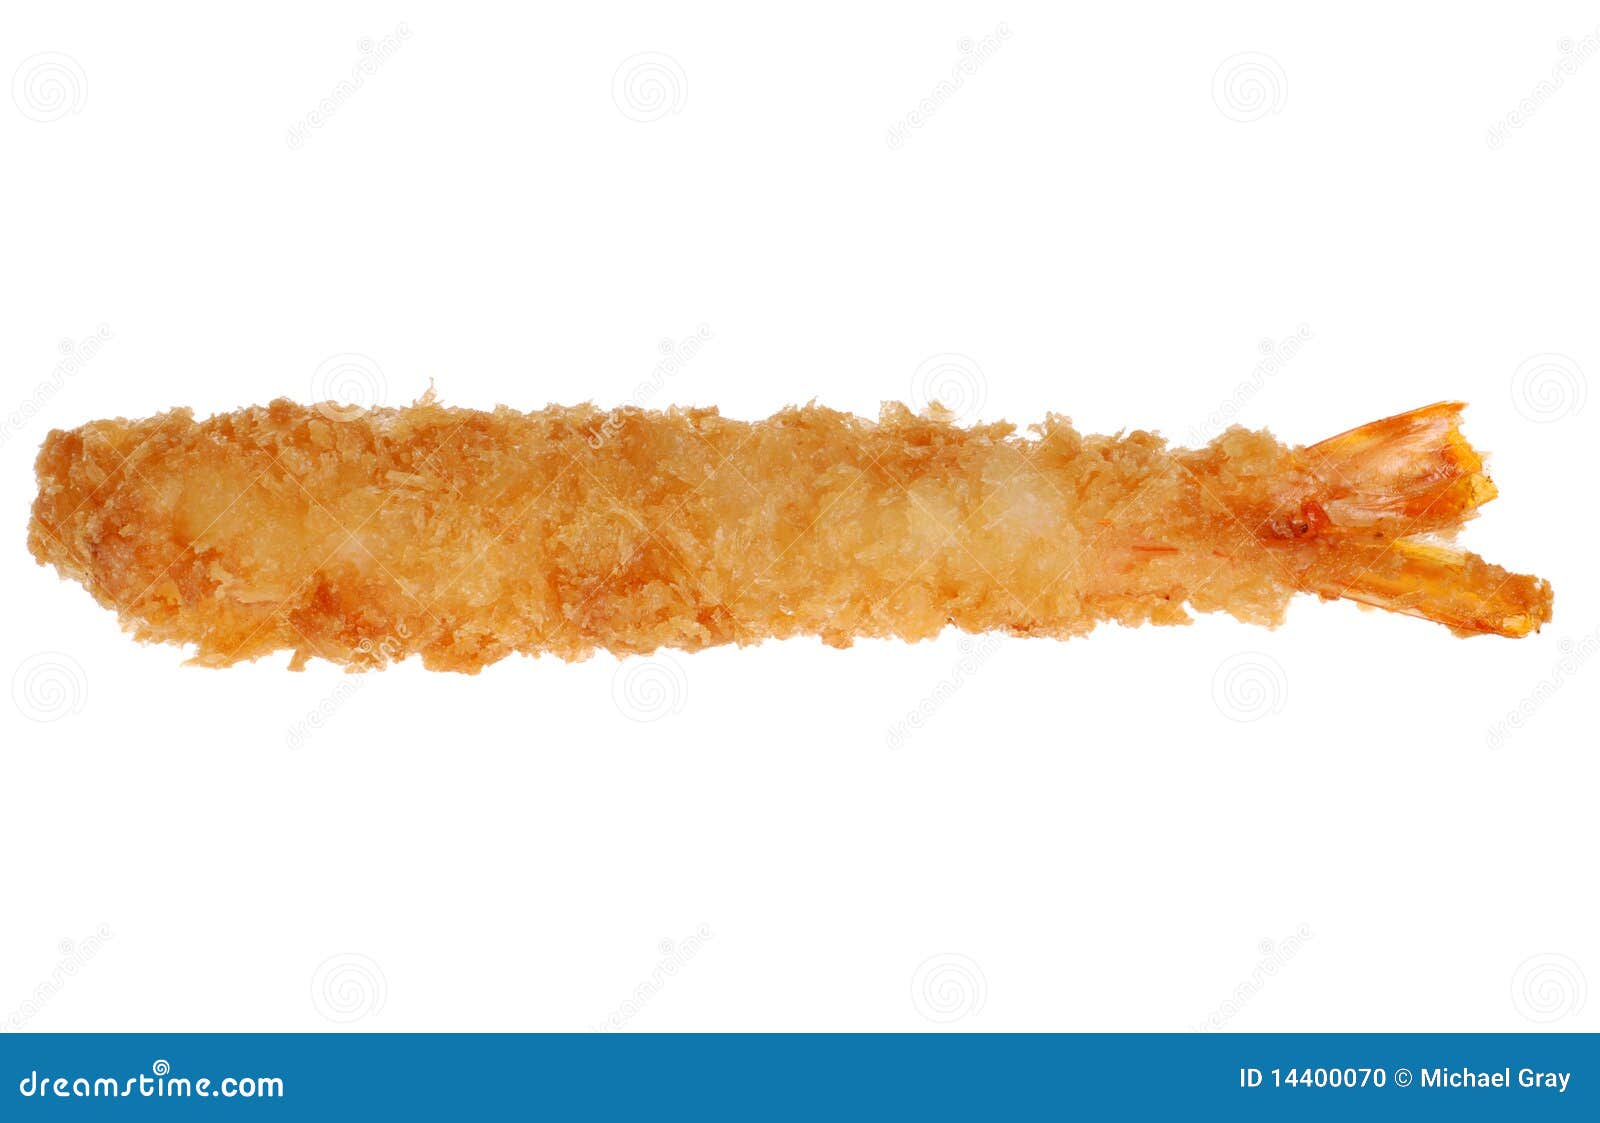  breaded shrimp